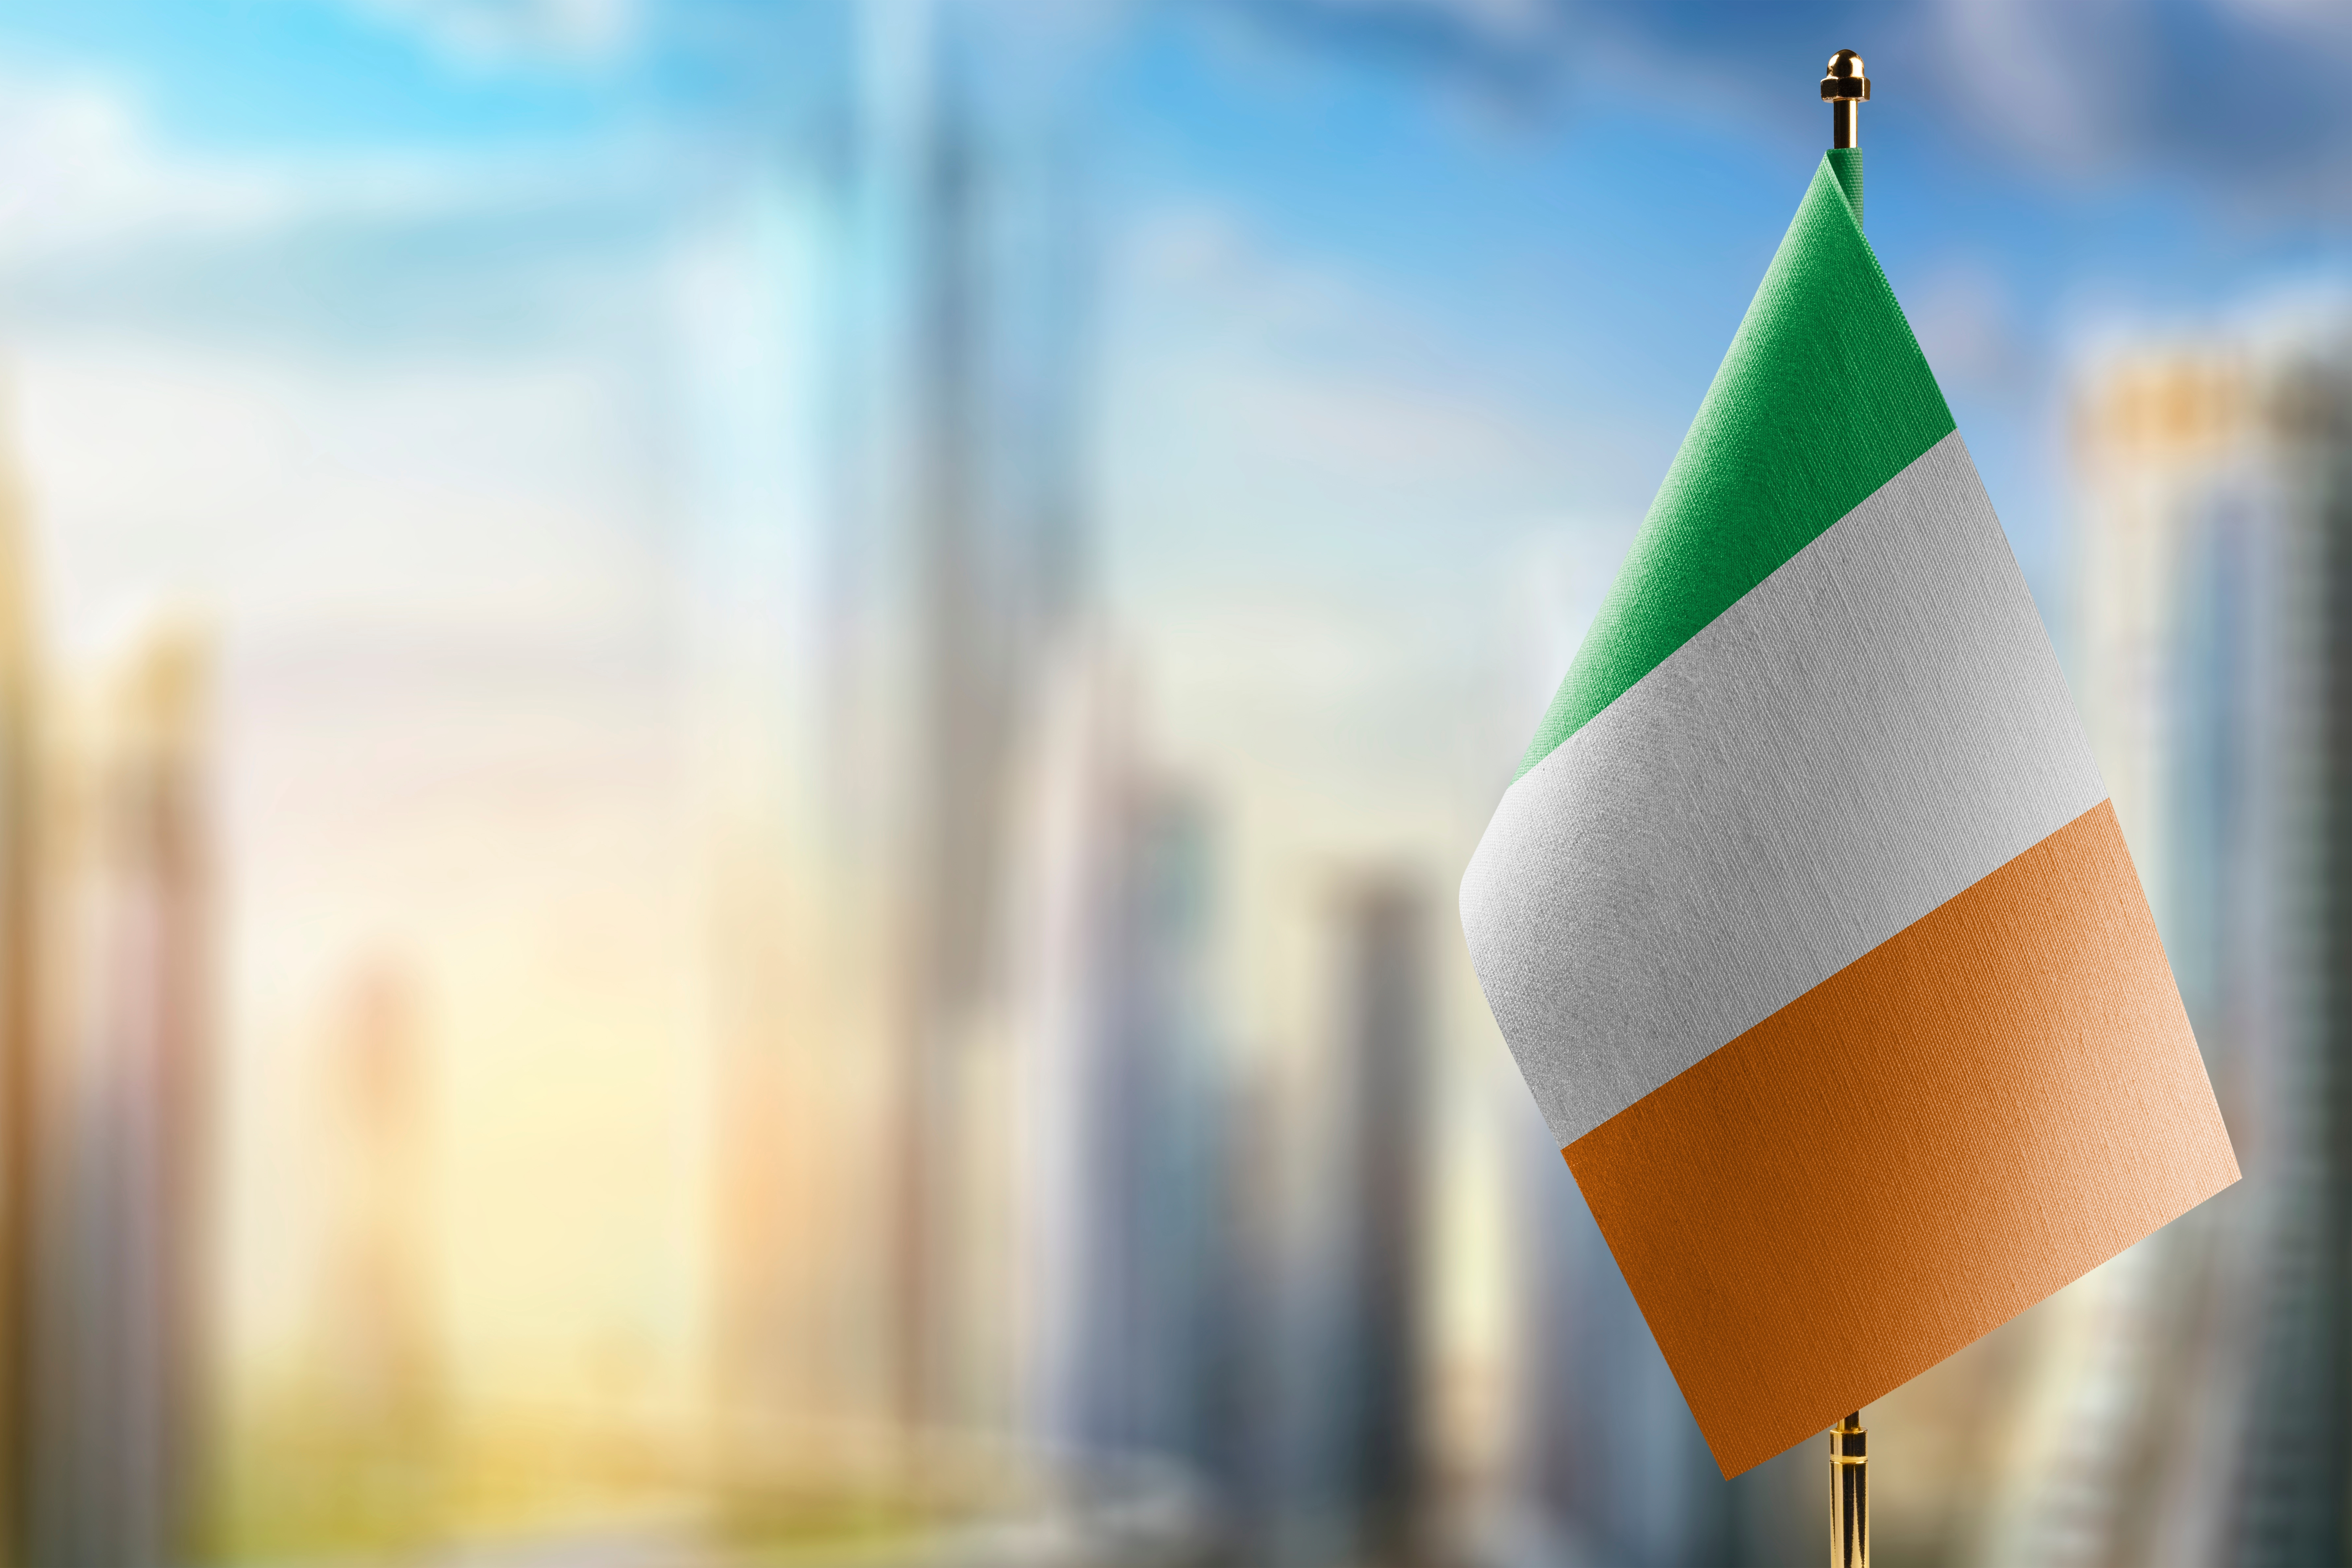 The flag symbolizes the citizenship of Ireland